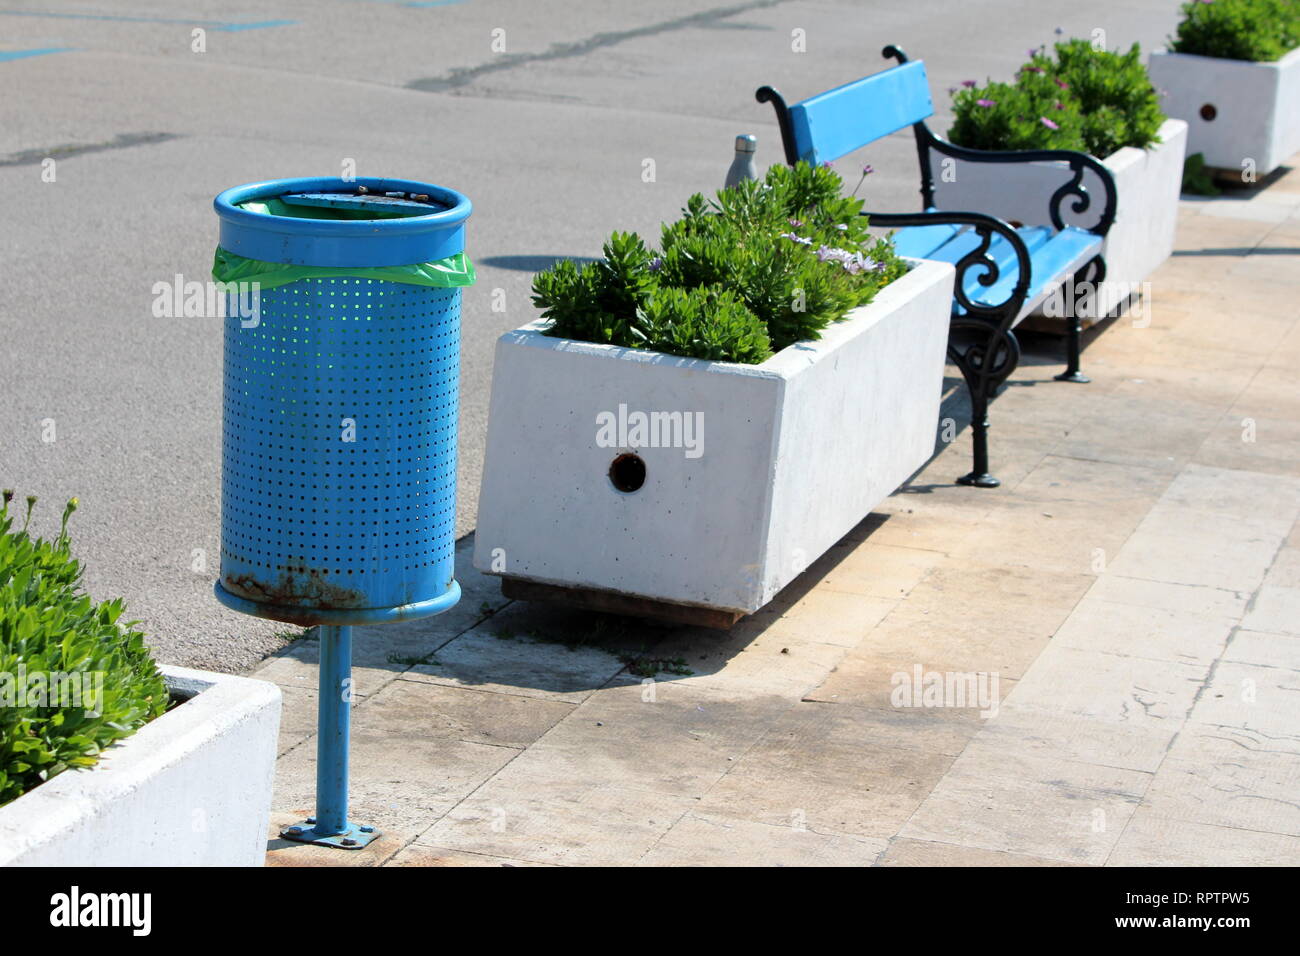 Blue metal poubelle publique avec nouveau sac en plastique dans la même  rangée banc public en bois bleu avec châssis de fer noir et blanc des pots  de fleurs en béton Photo